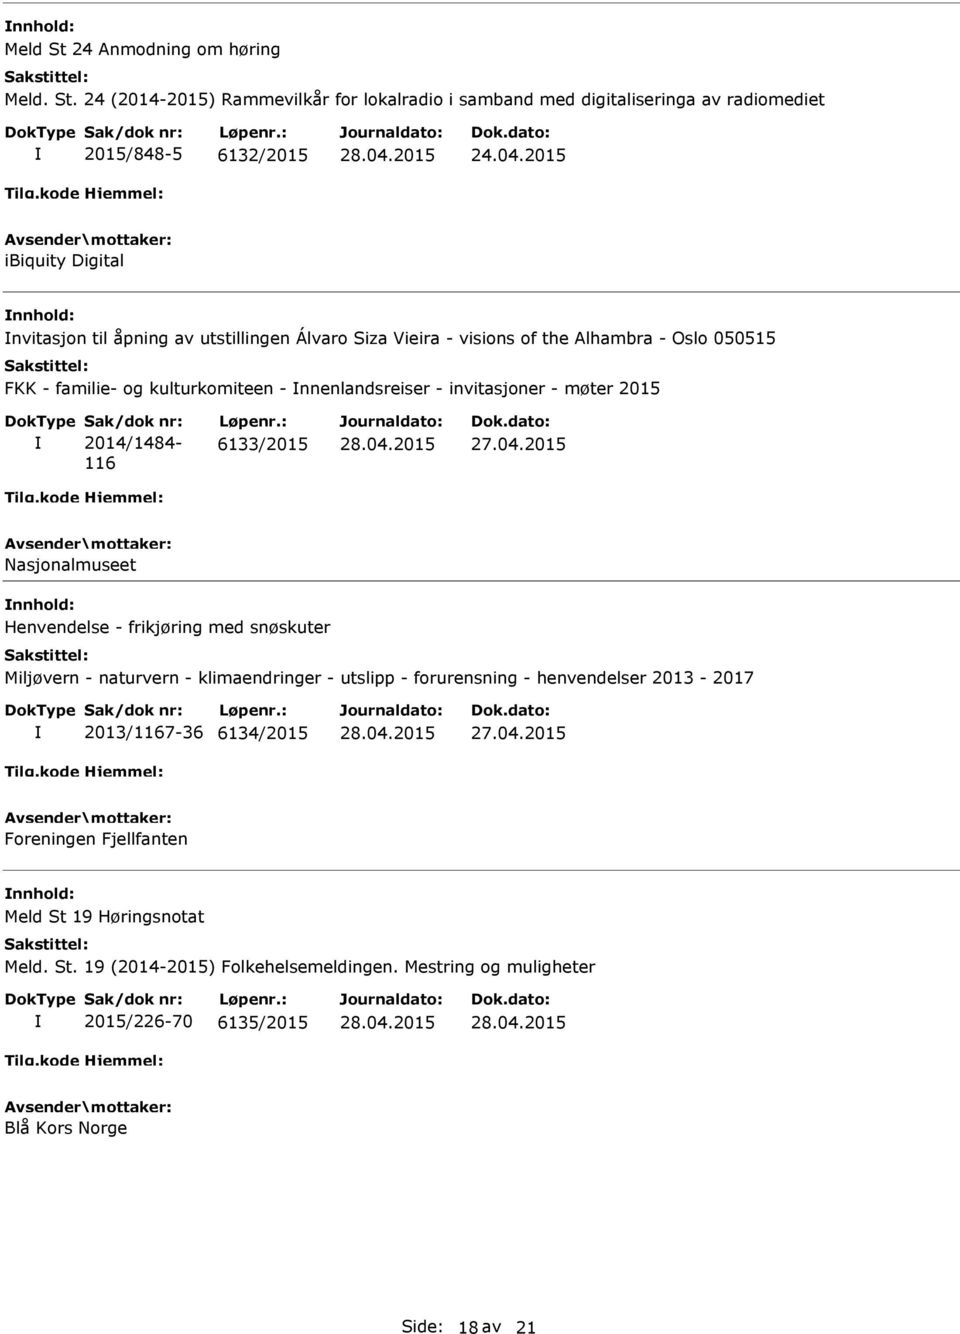 nnenlandsreiser - invitasjoner - møter 2015 Sak/dok nr: 2014/1484-116 Løpenr.